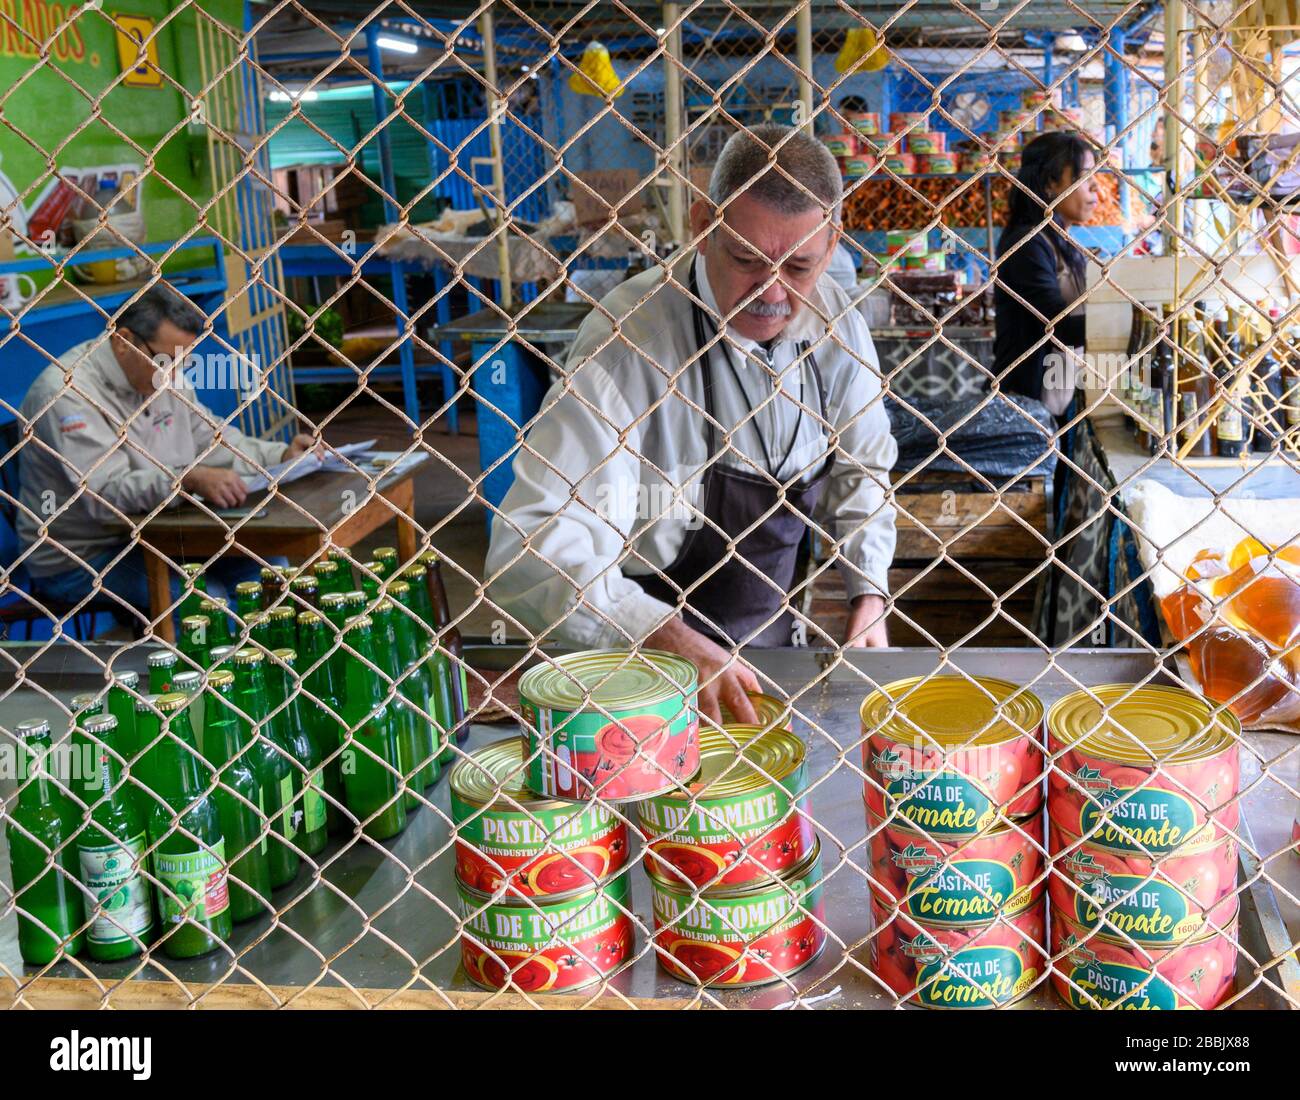 Food market, Vedado, Havana, Cuba Stock Photo